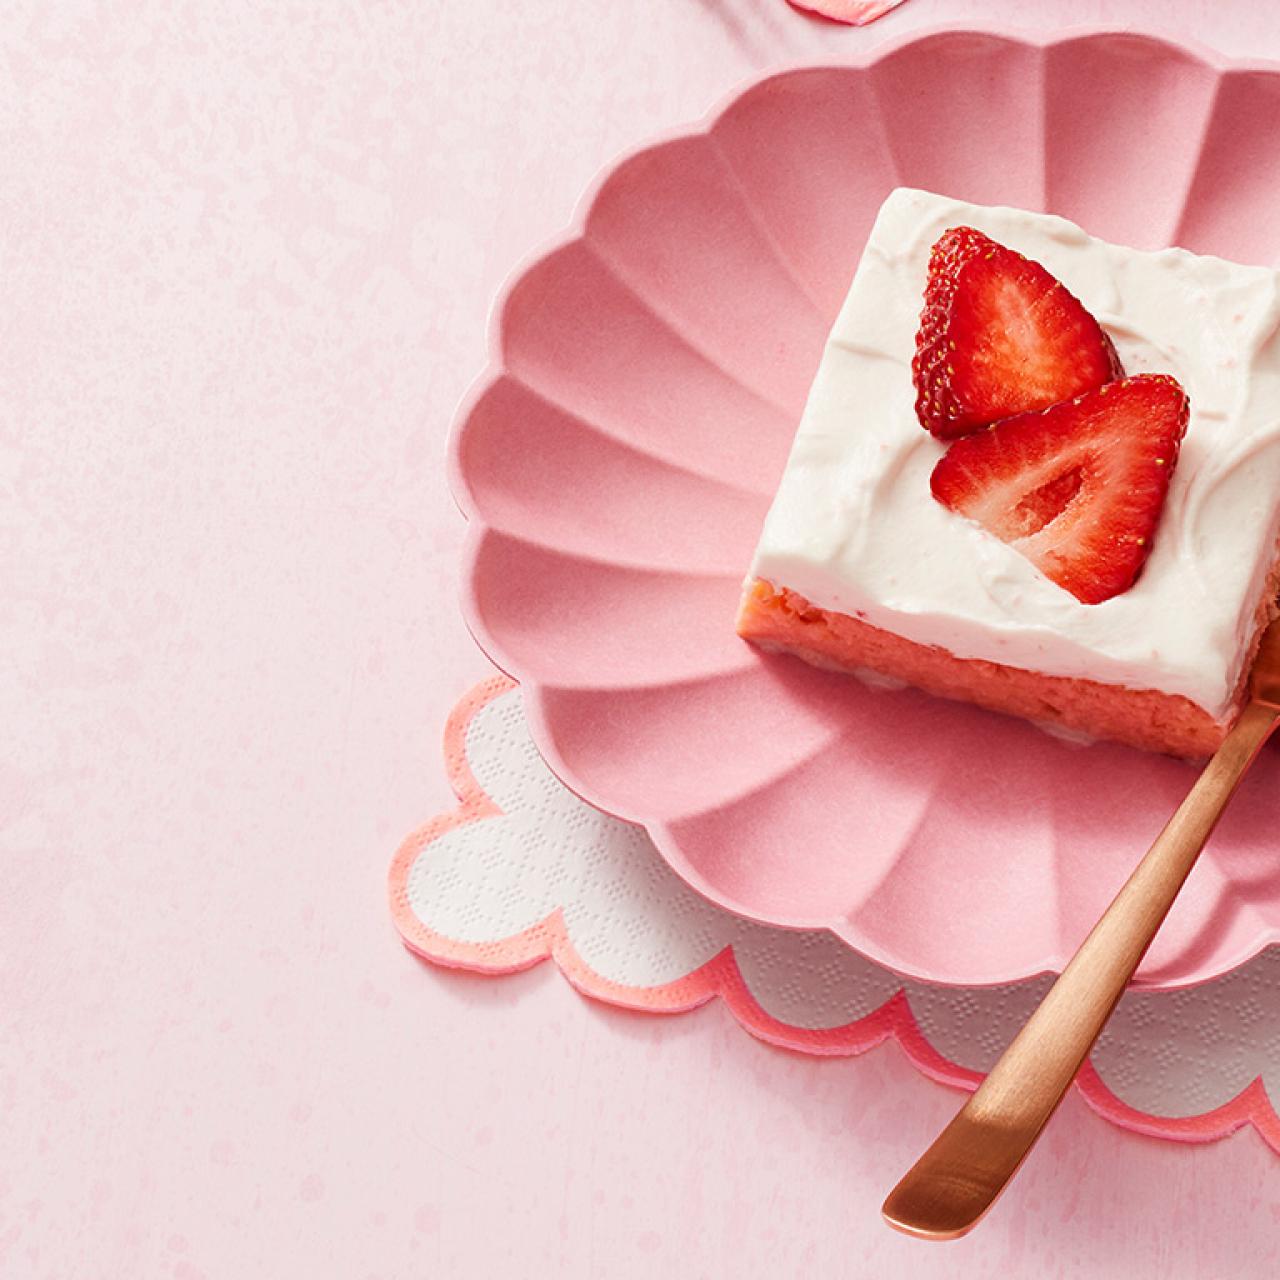 Strawberries and Cream Cake Recipe